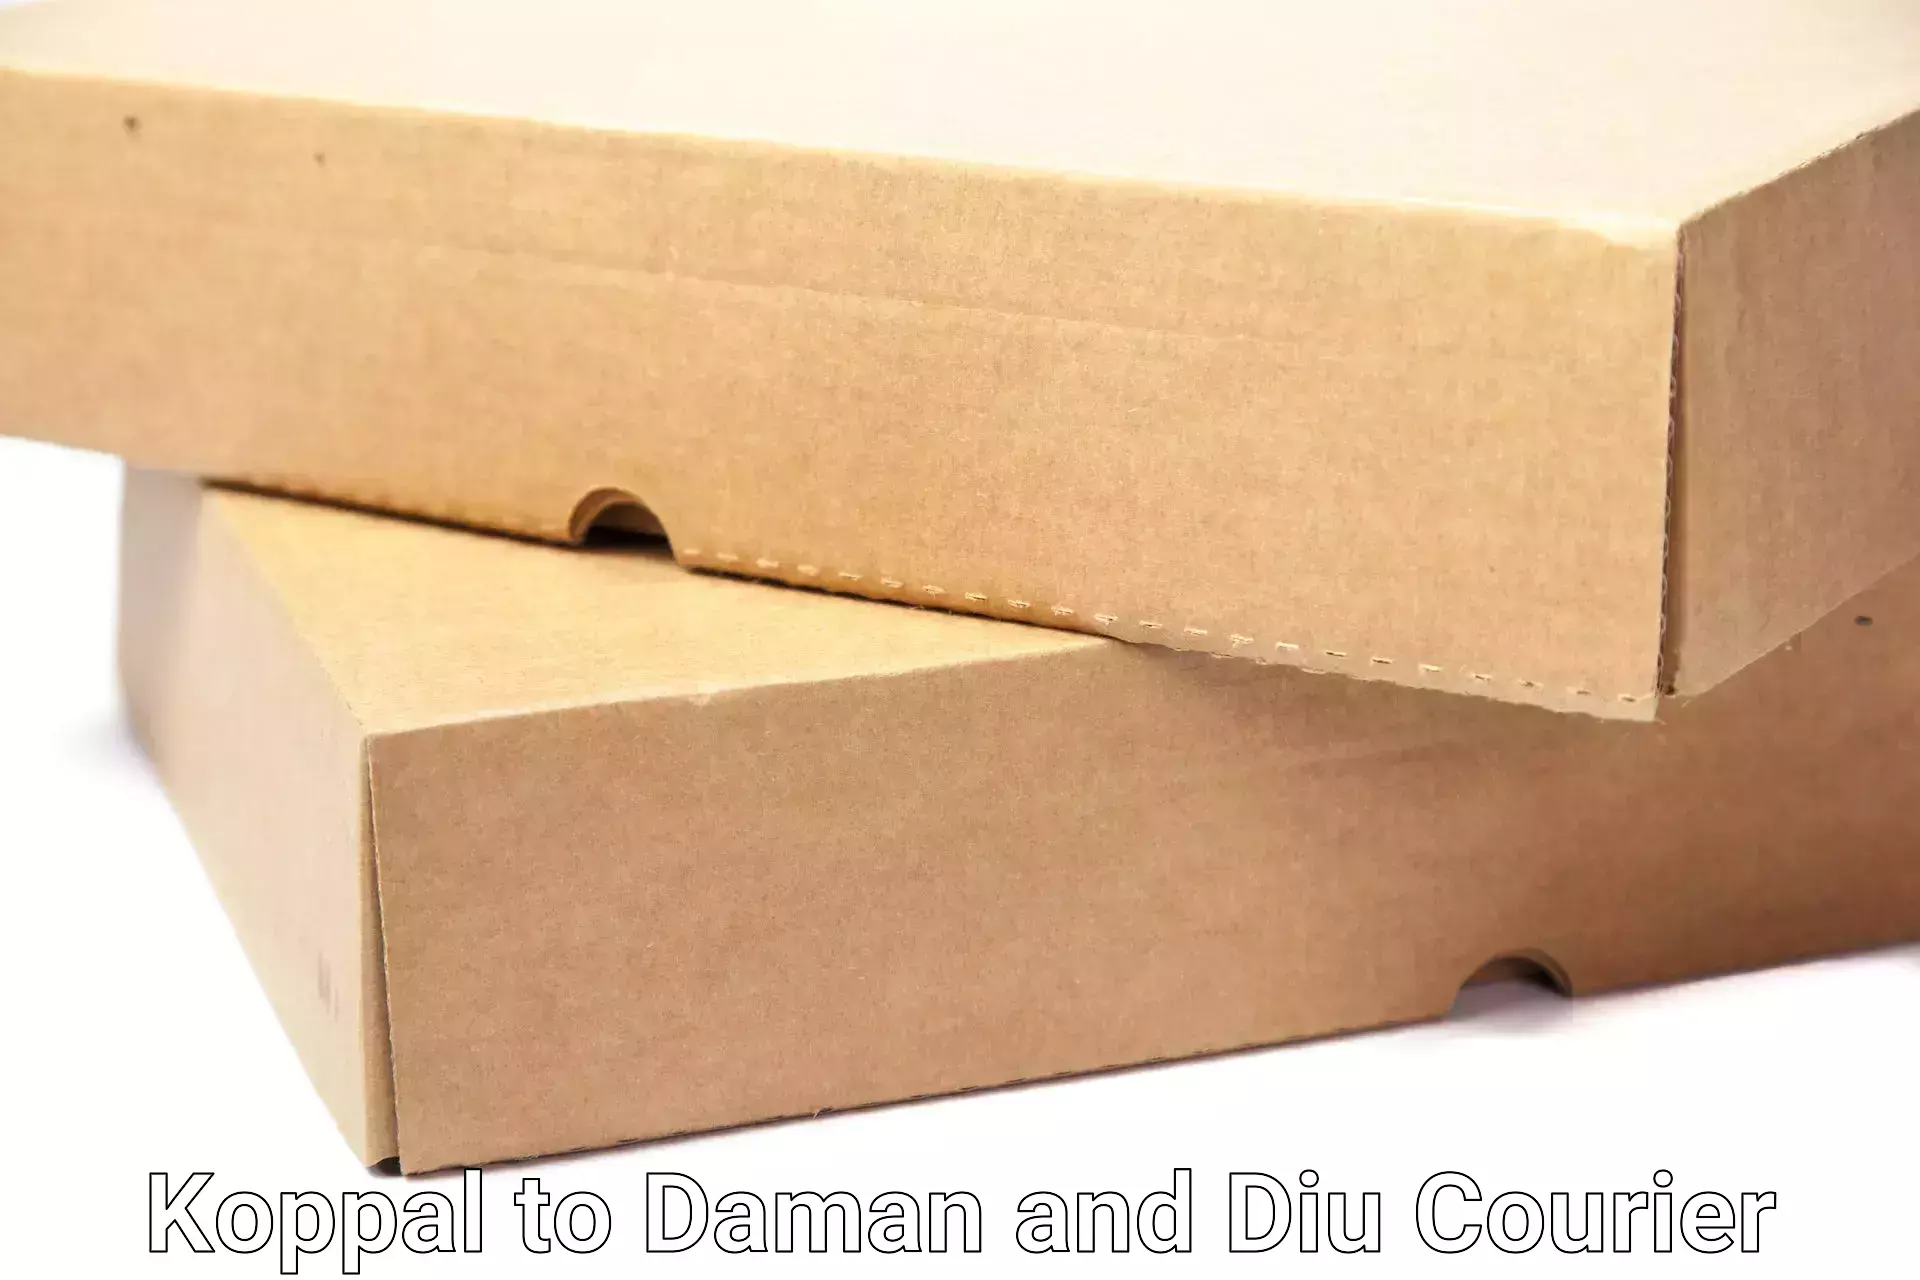 Expert goods movers Koppal to Daman and Diu